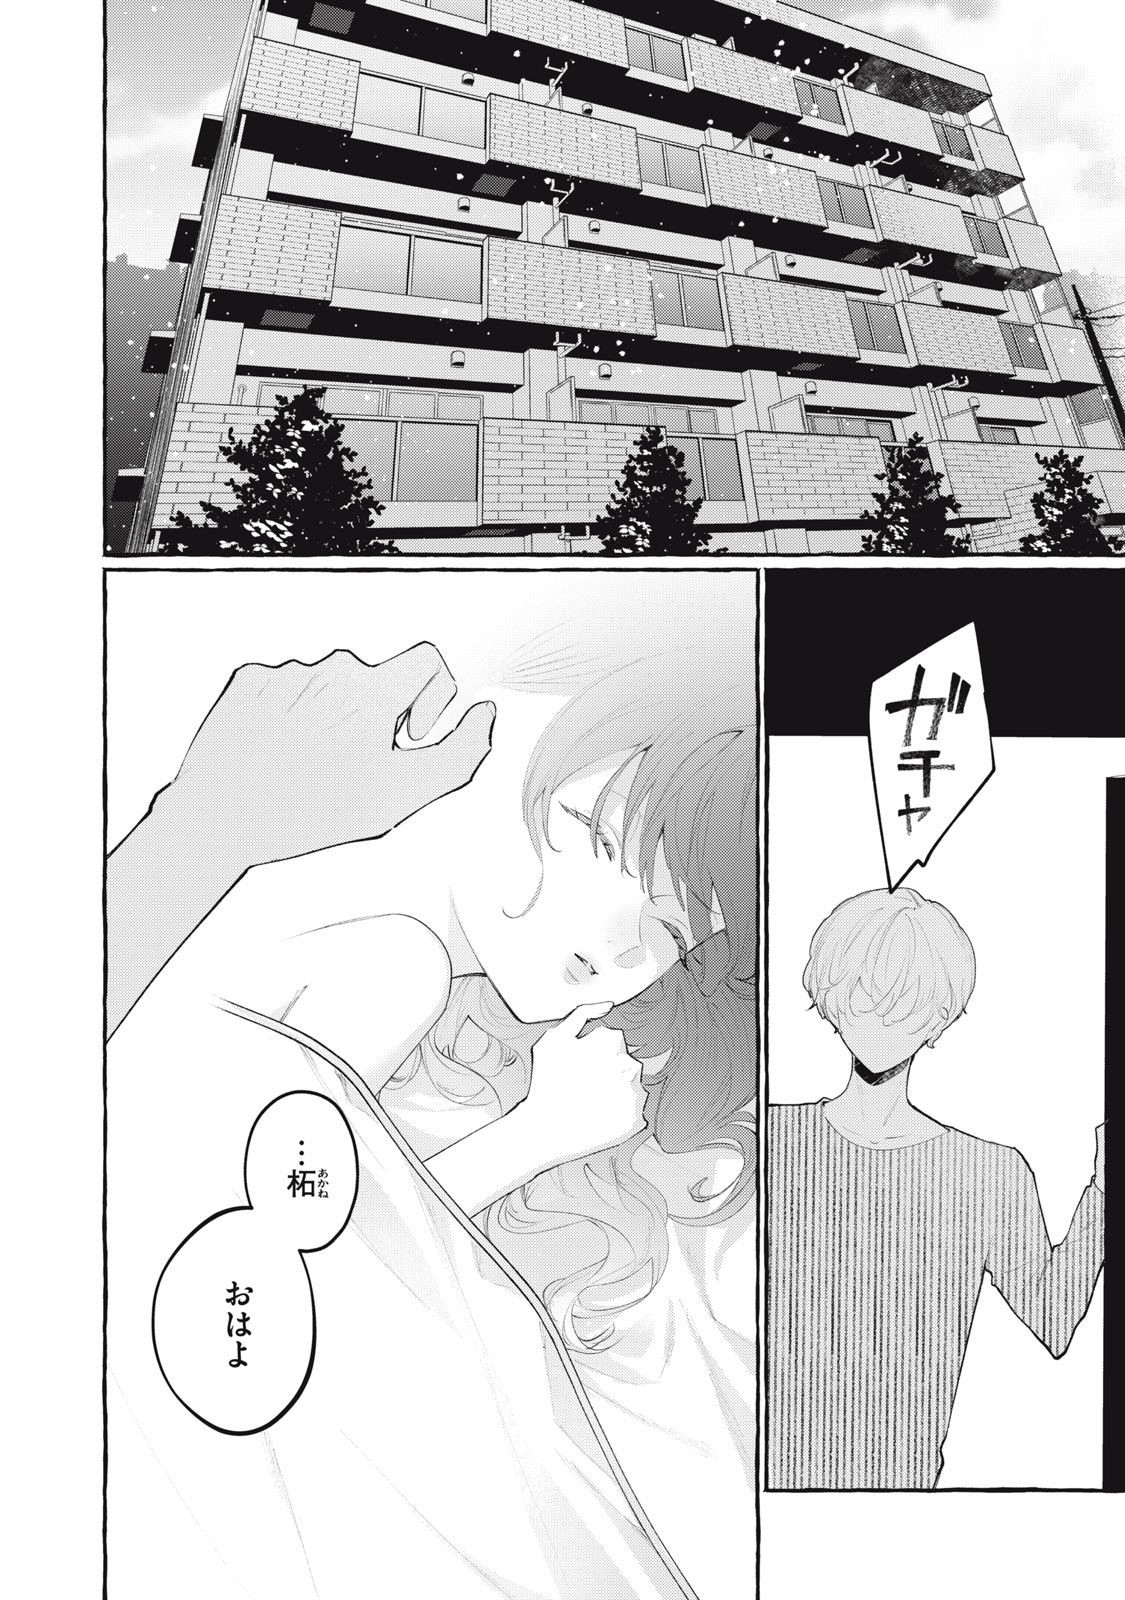 Dokuzu - Chapter 12 - Page 2